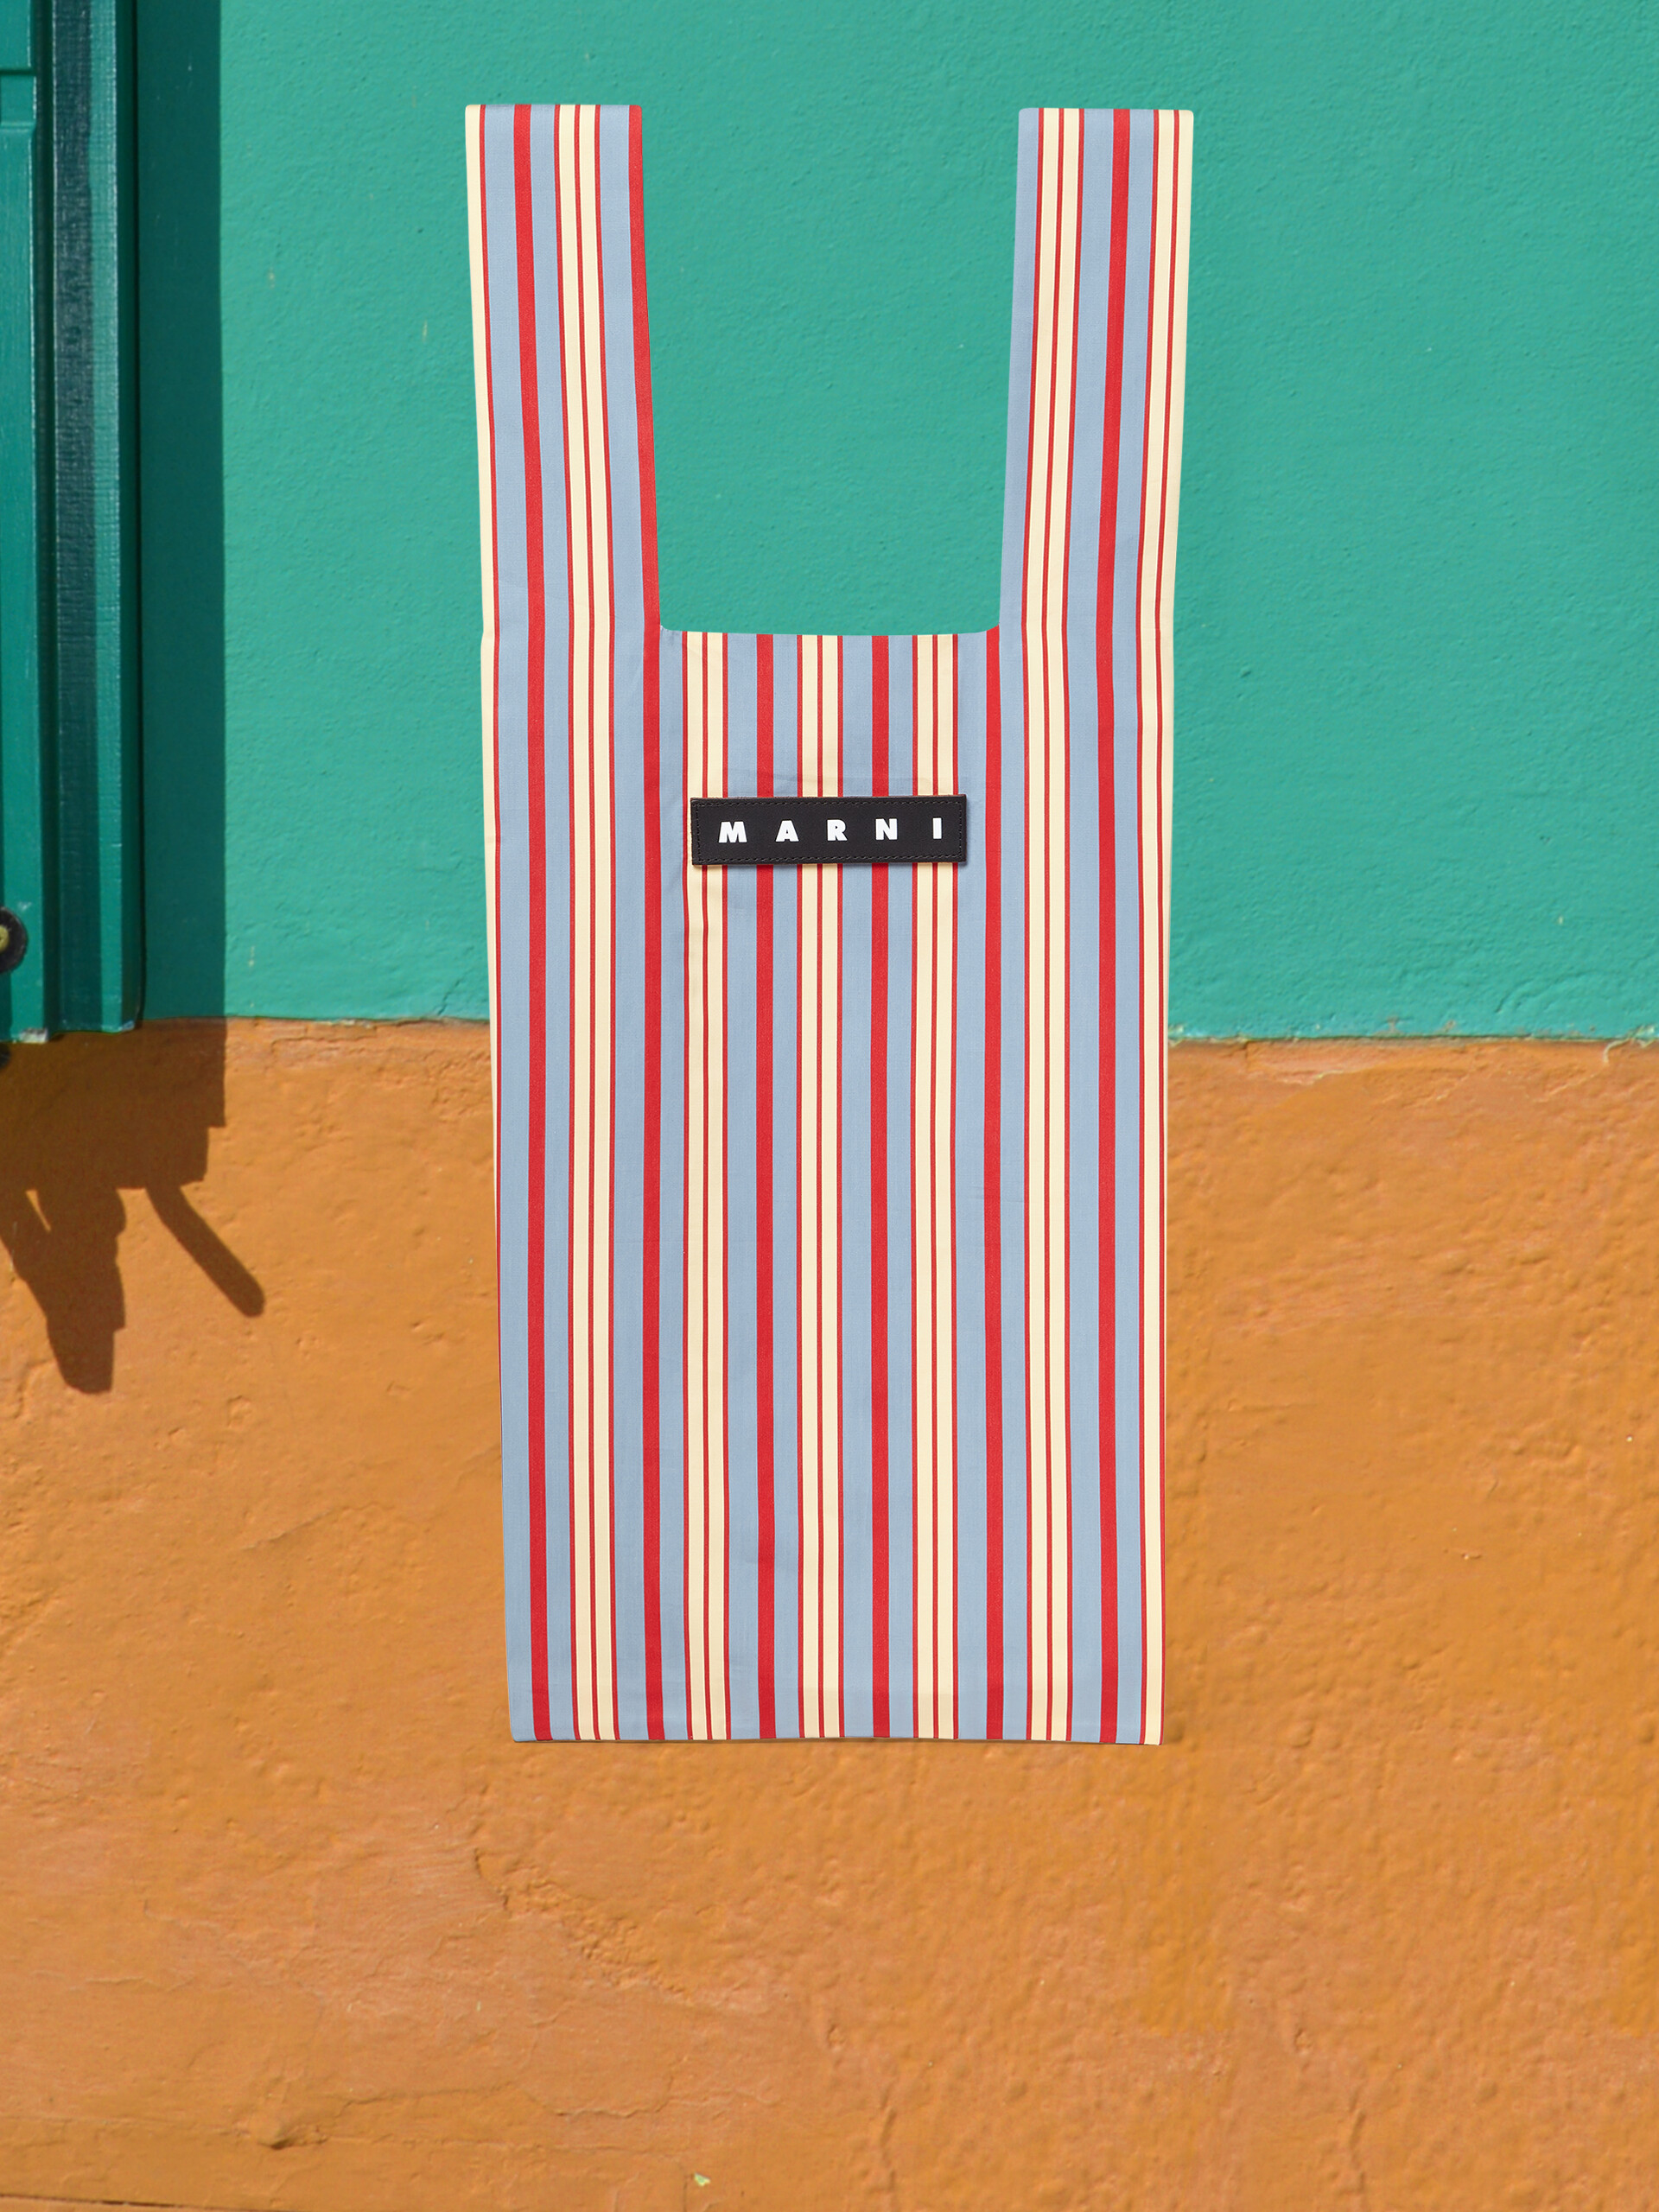 MARNI MARKET Shopper aus Viskose mit hellblauen und roten Streifen - Shopper - Image 1